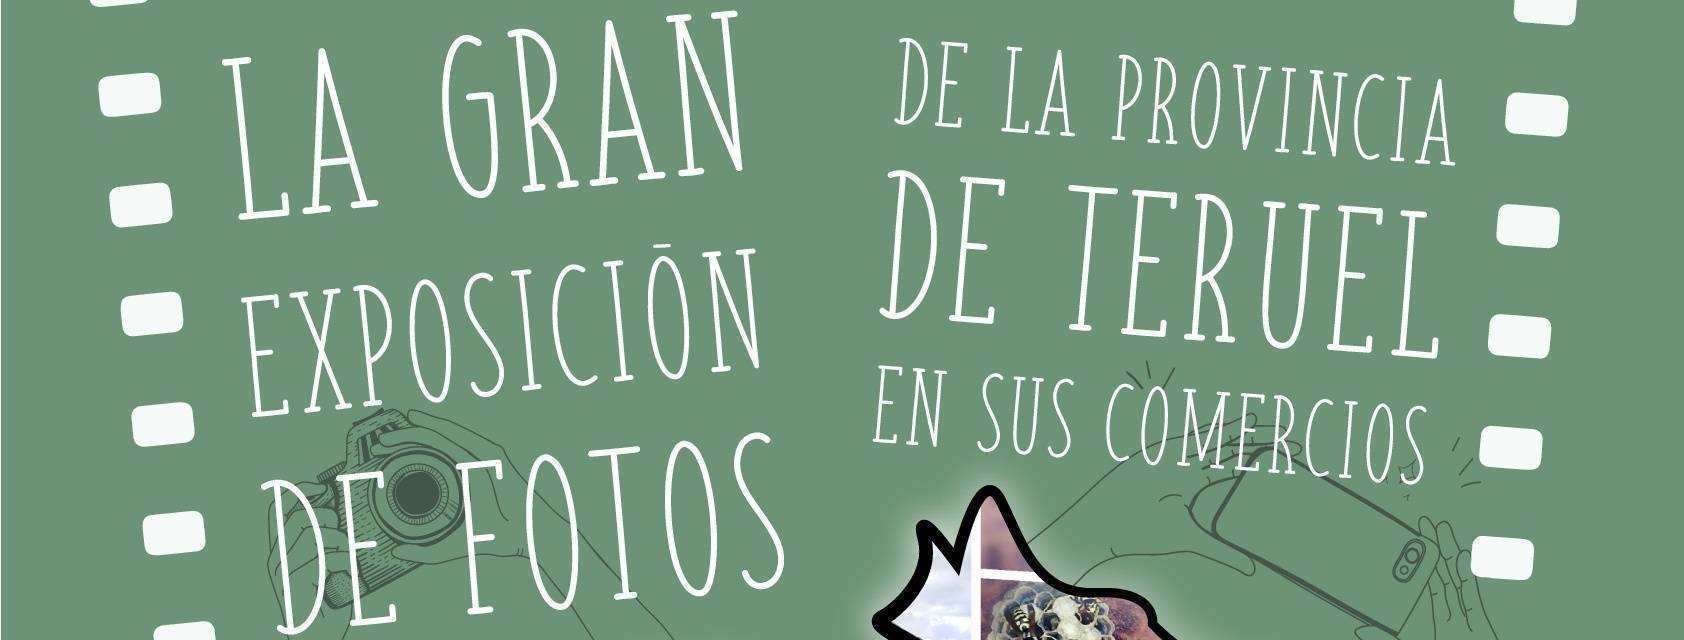 La gran Exposición de fotos de la provincia de Teruel en sus comercios